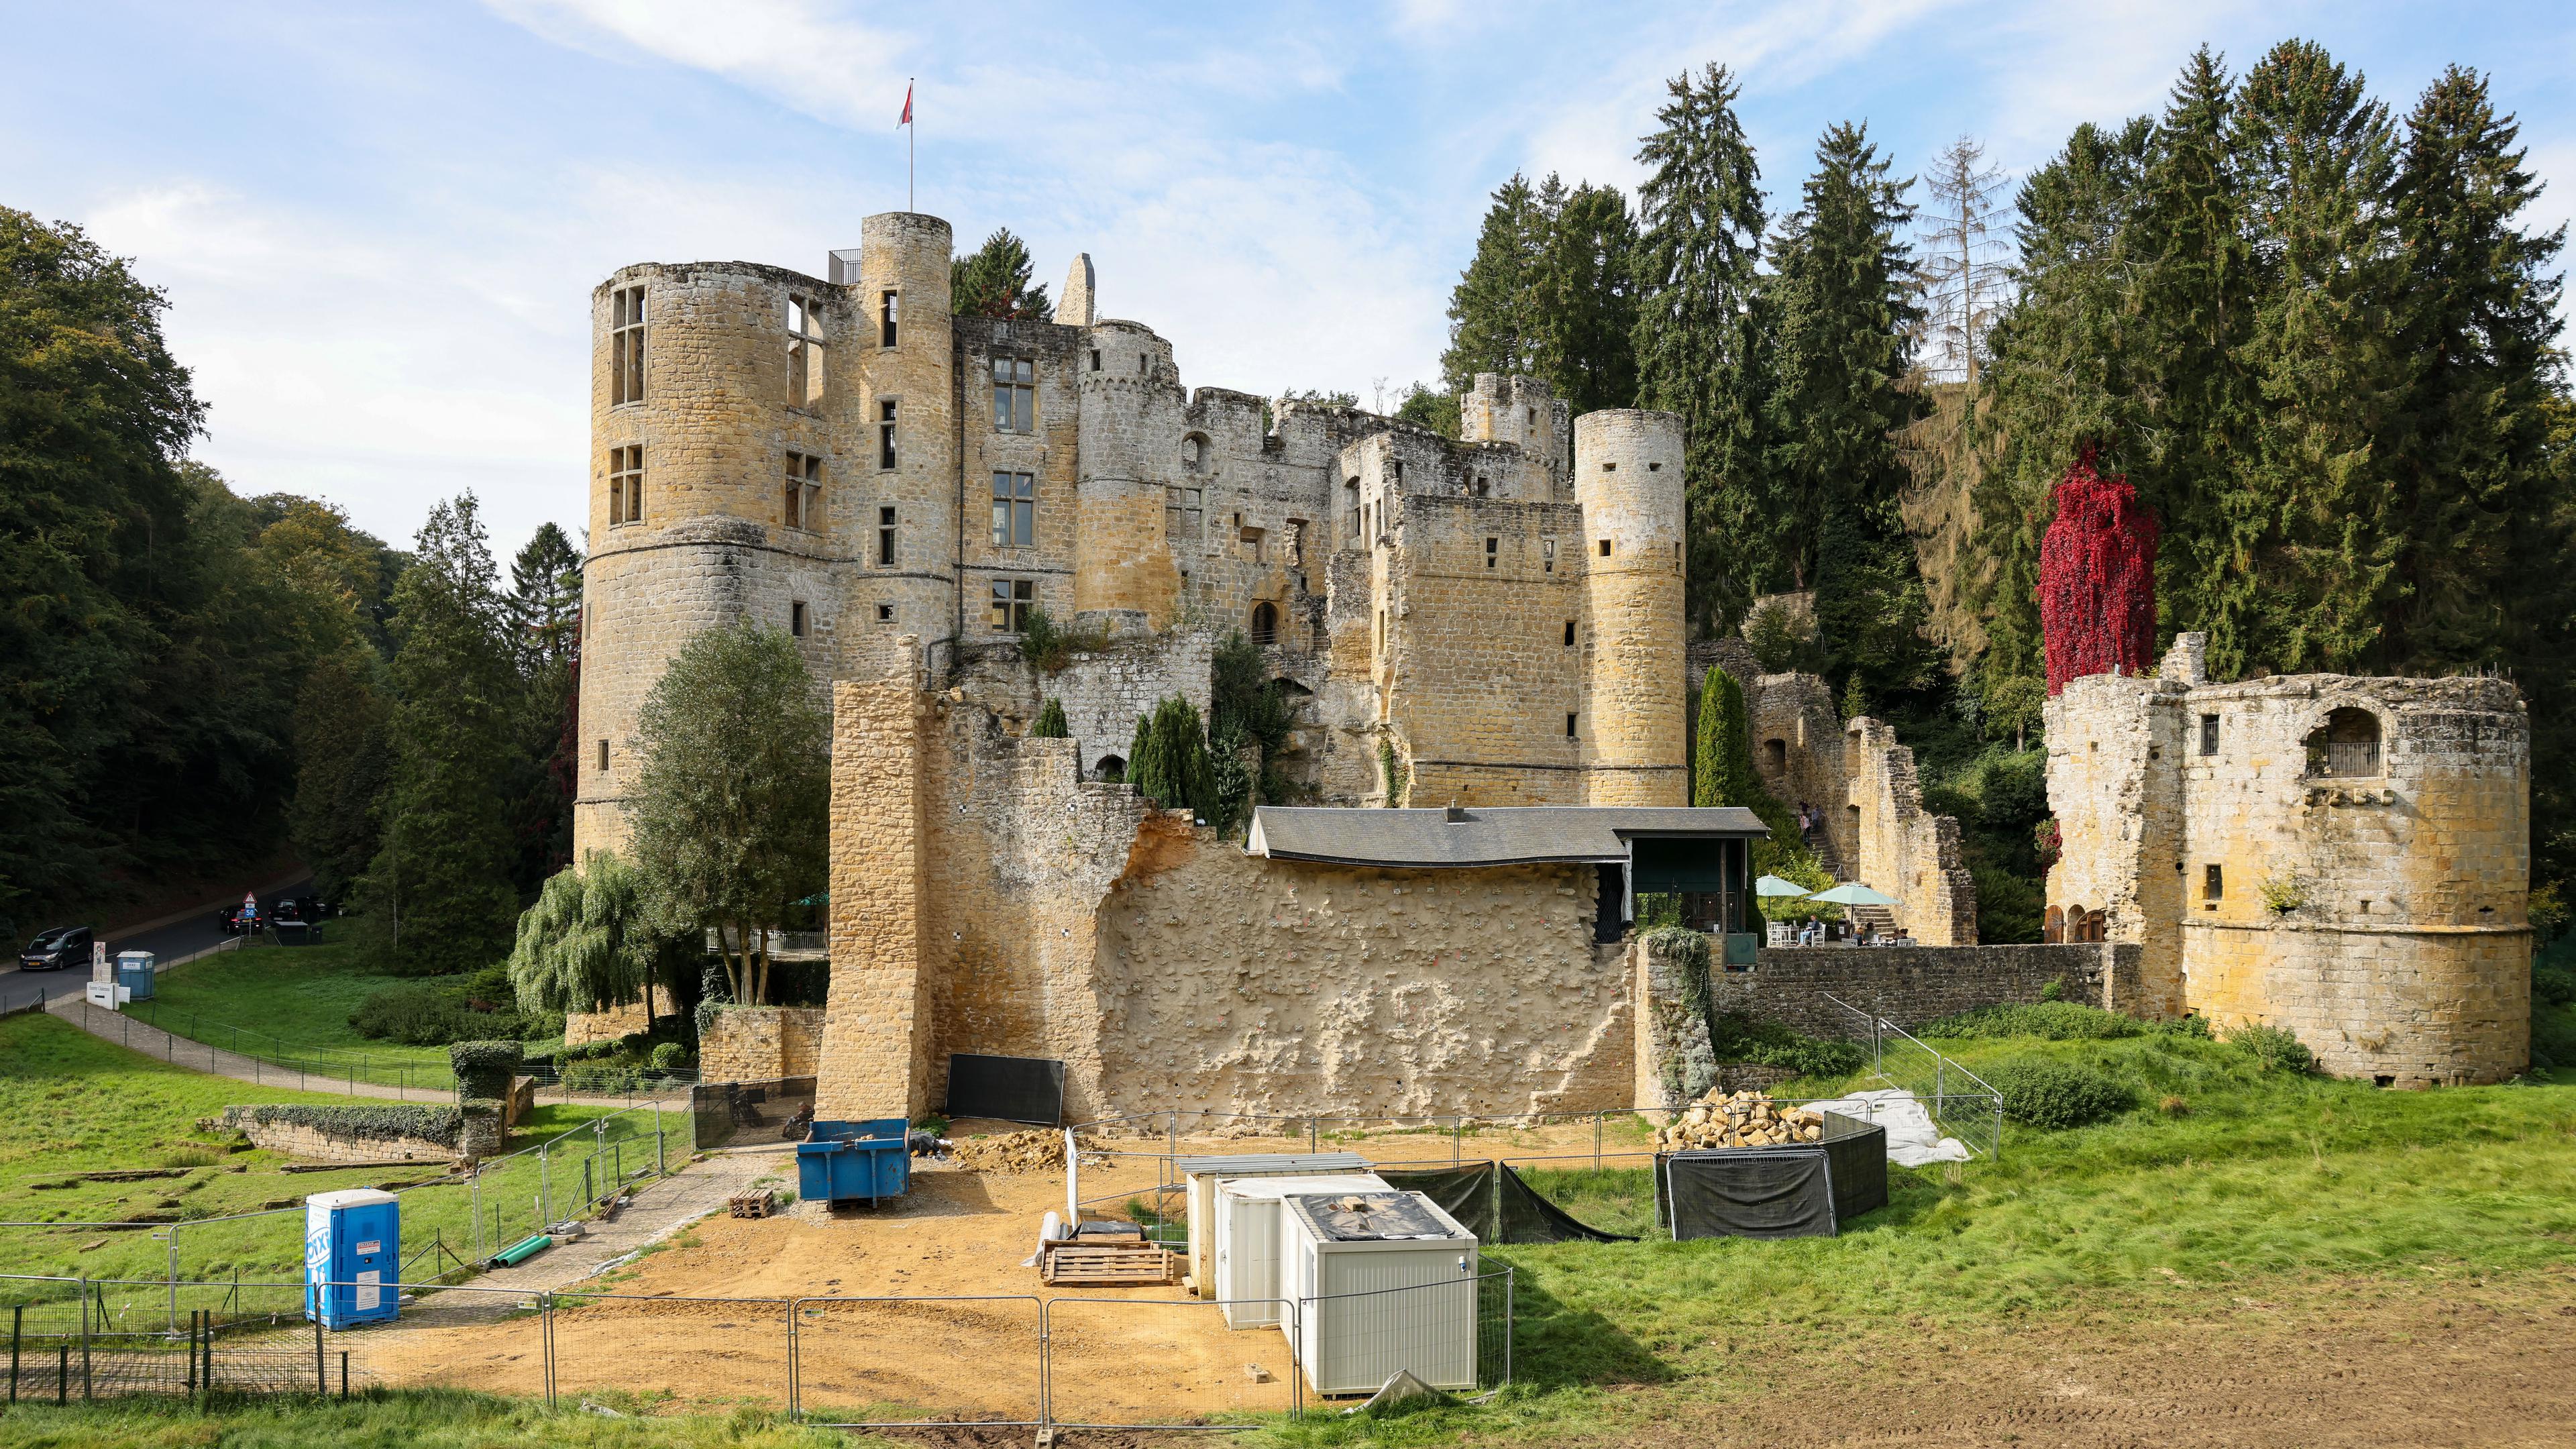 Die Gemeinde mit der mittelalterlichen Burg schlägt ein neues politisches Kapitel auf. 